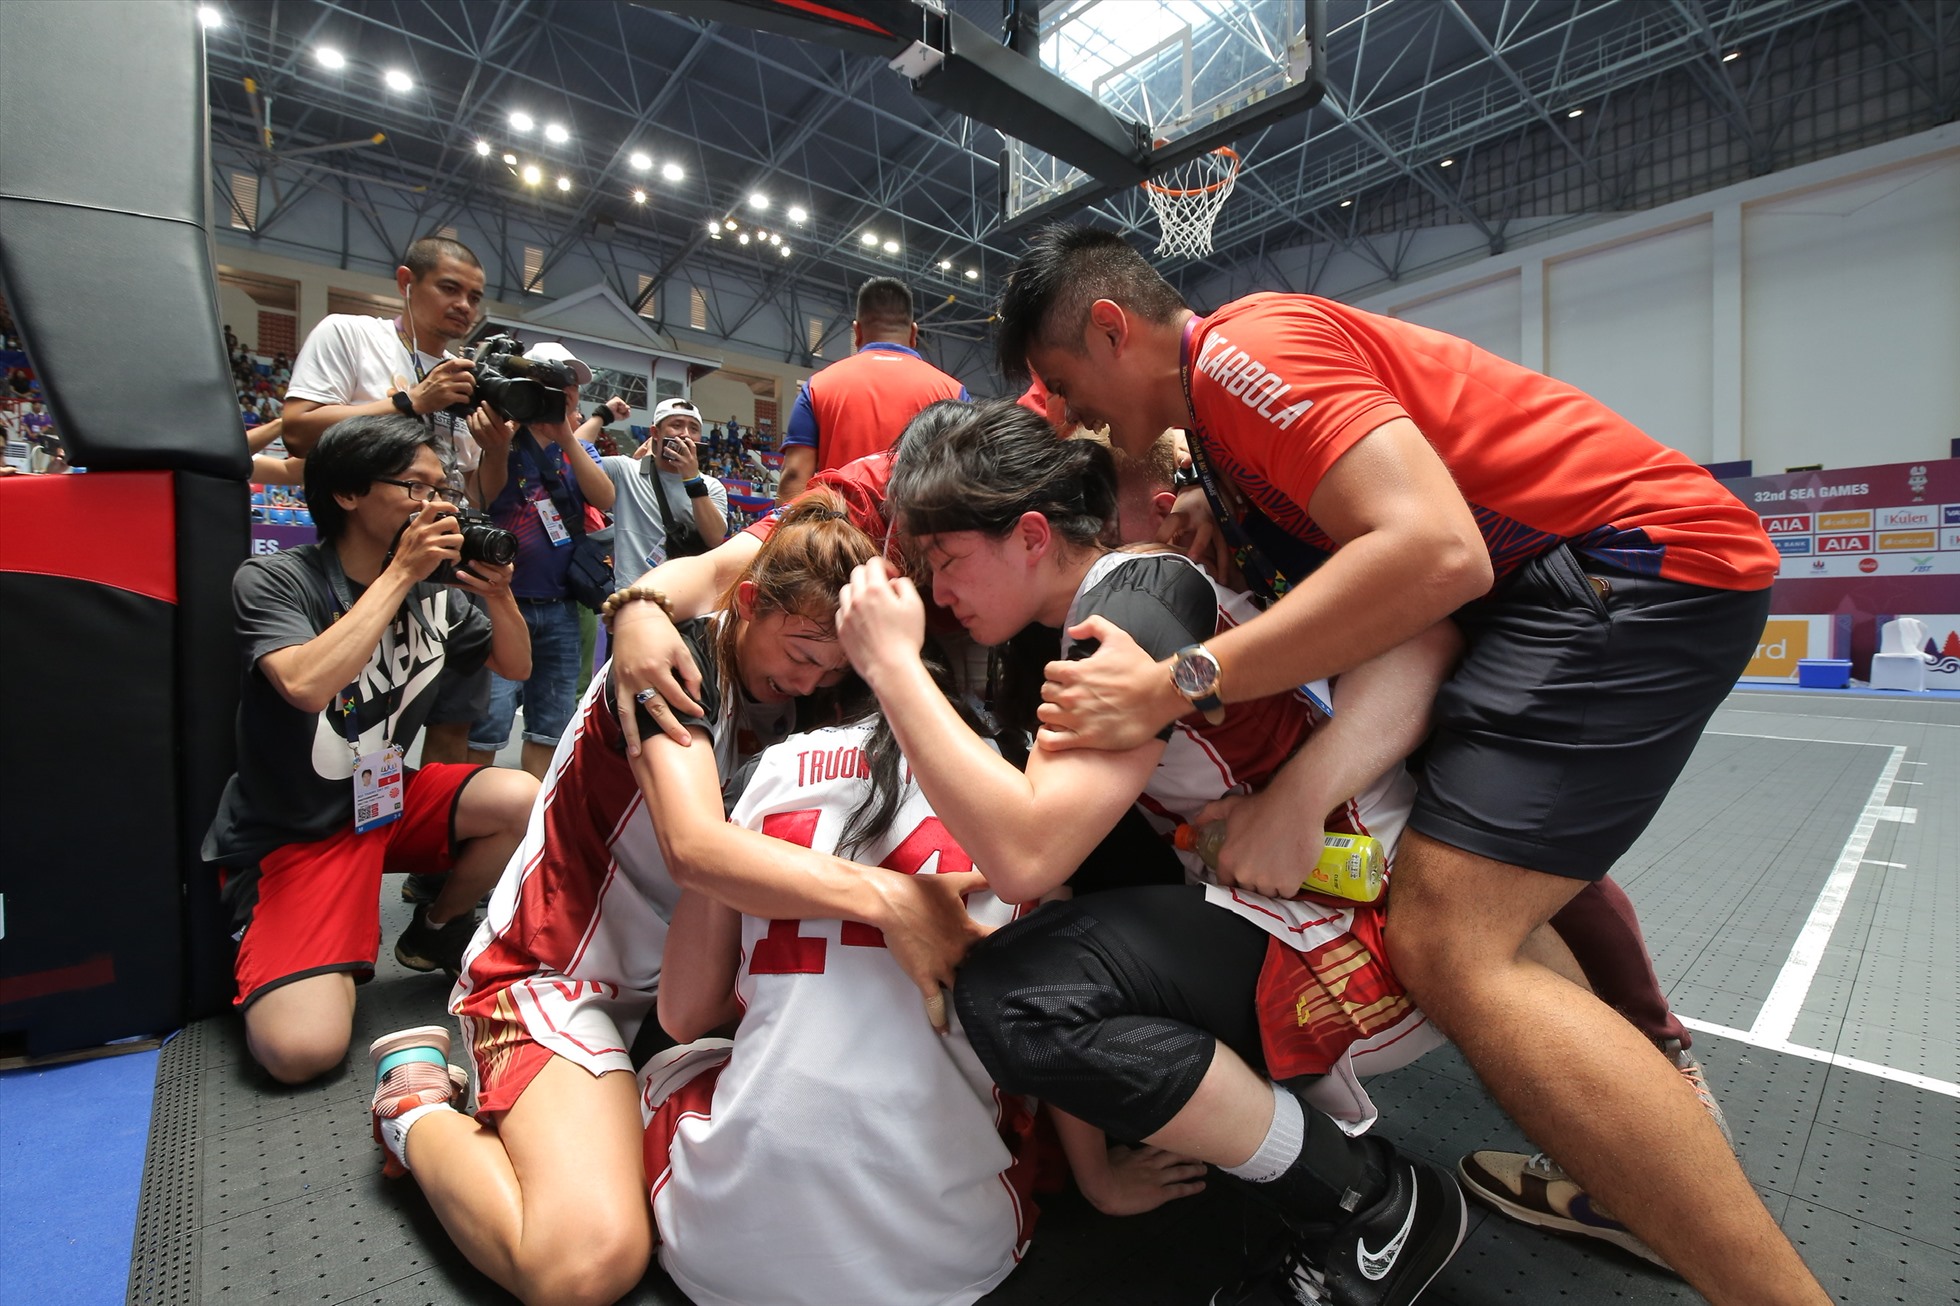 Cặp chị em sinh đôi Thảo Vy - Thảo My cùng các đồng đội bật khóc khi đội bóng rổ nữ 3x3 giành Huy chương Vàng lịch sử tại SEA Games 32. Ảnh: Đoàn TTVN